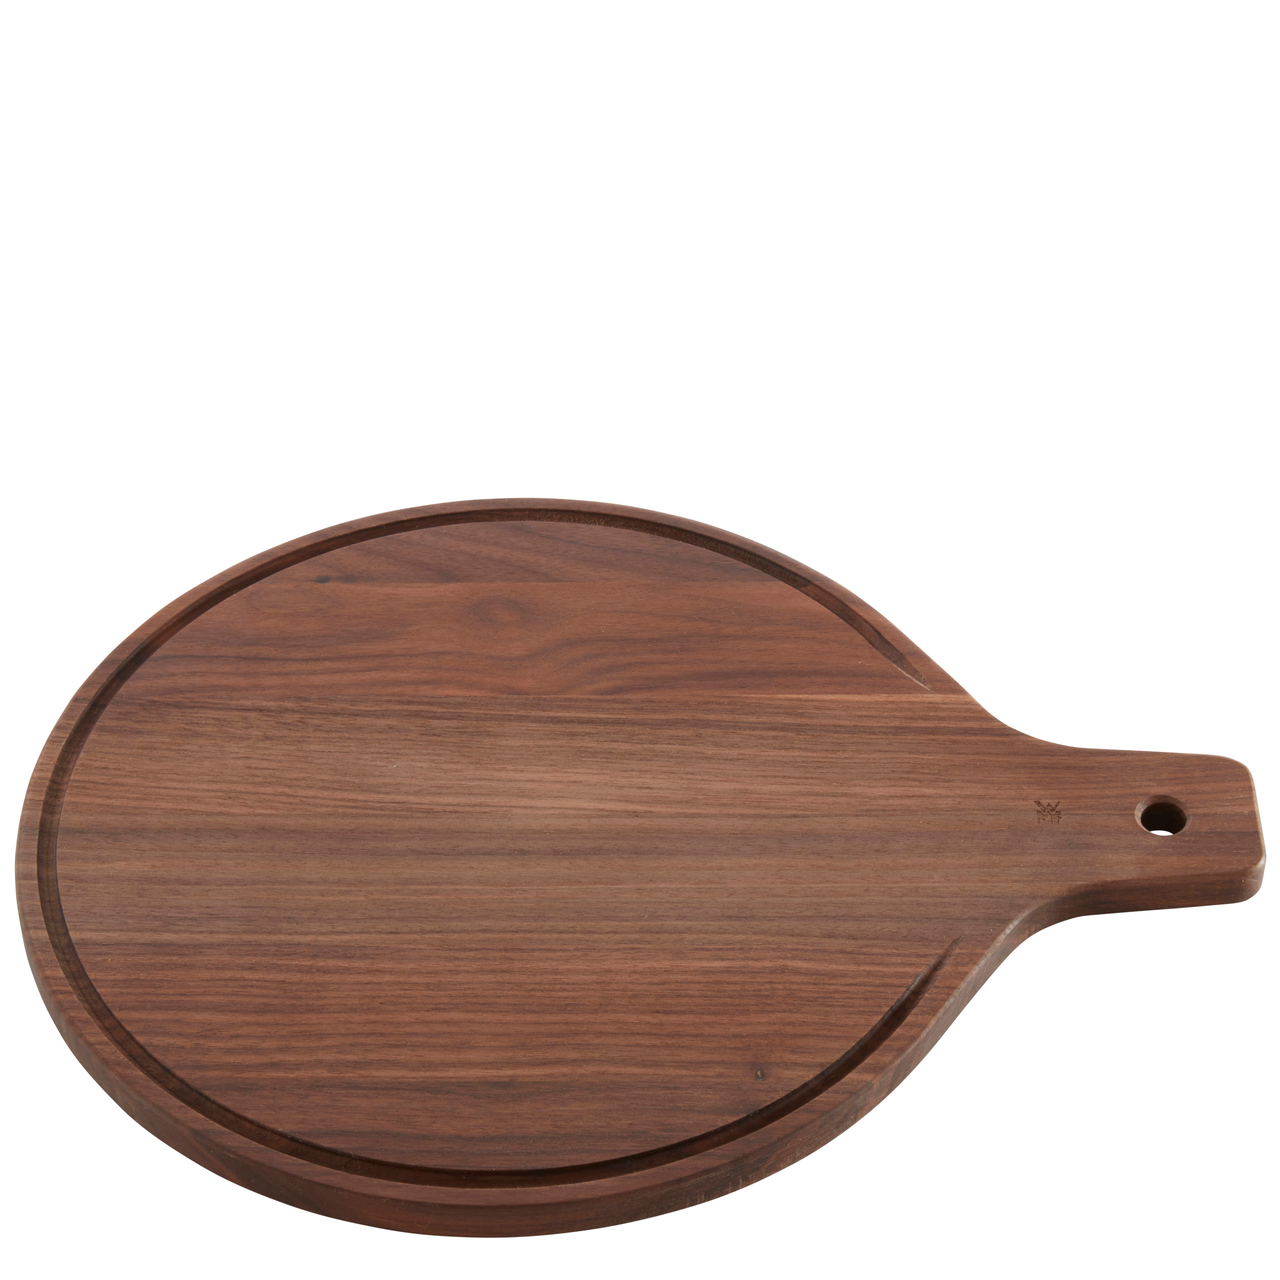 Server wood (walnut) round Ø30x38cm